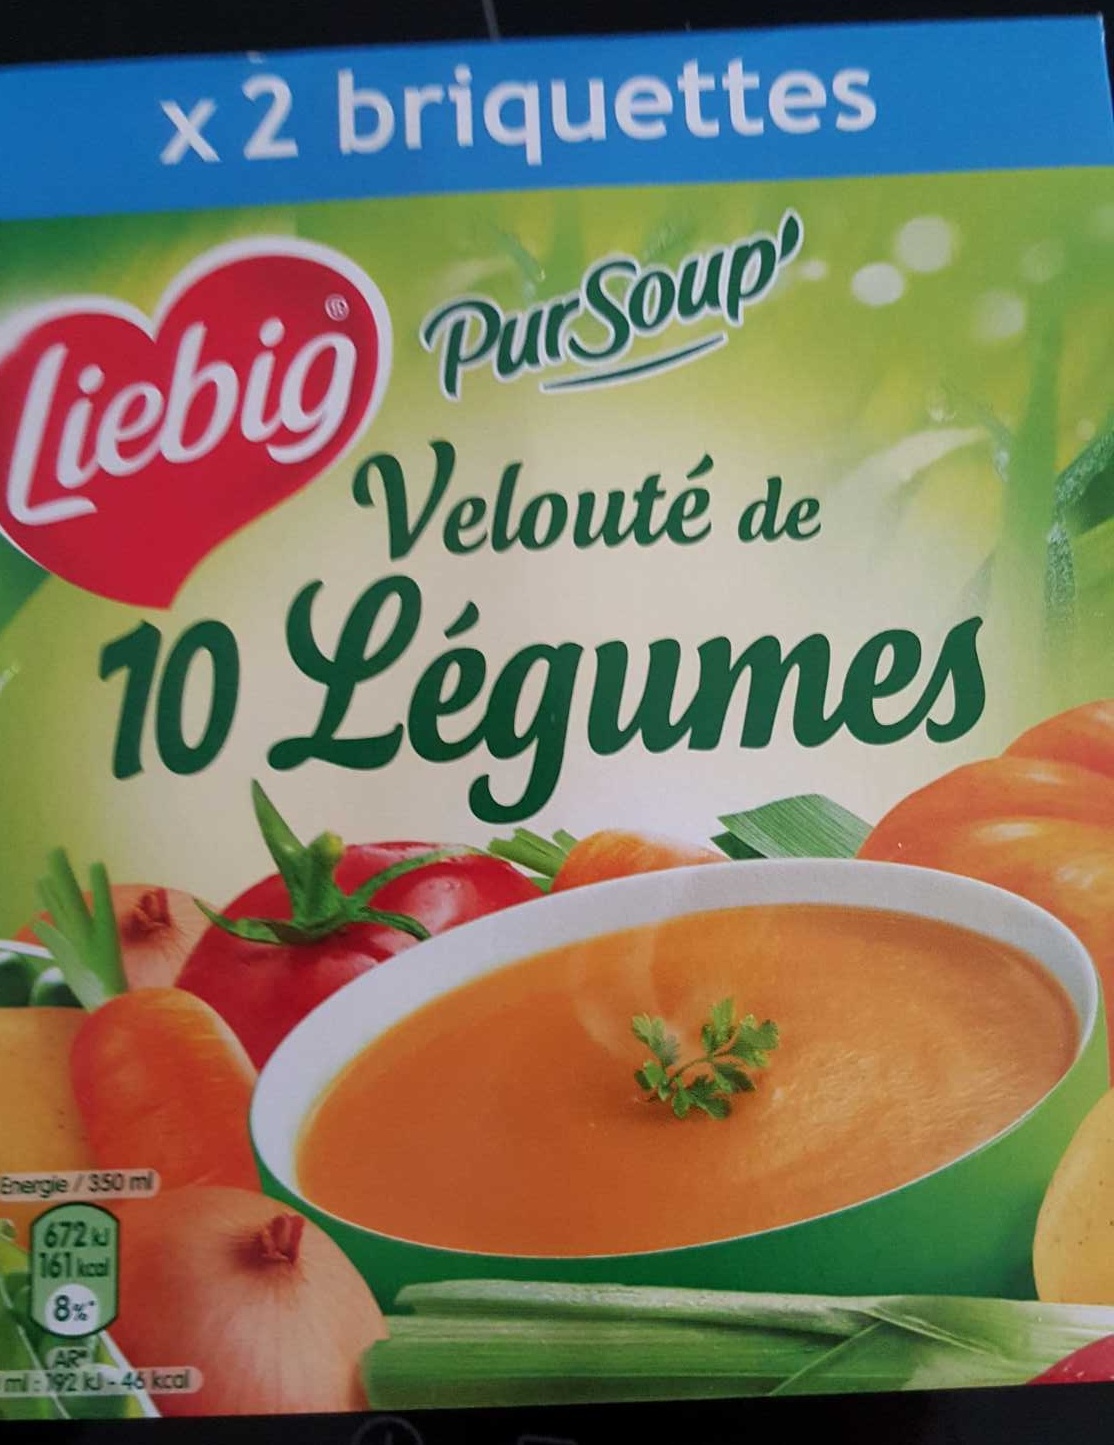 Pur Soup' - Velouté de 10 Légumes - Product - fr